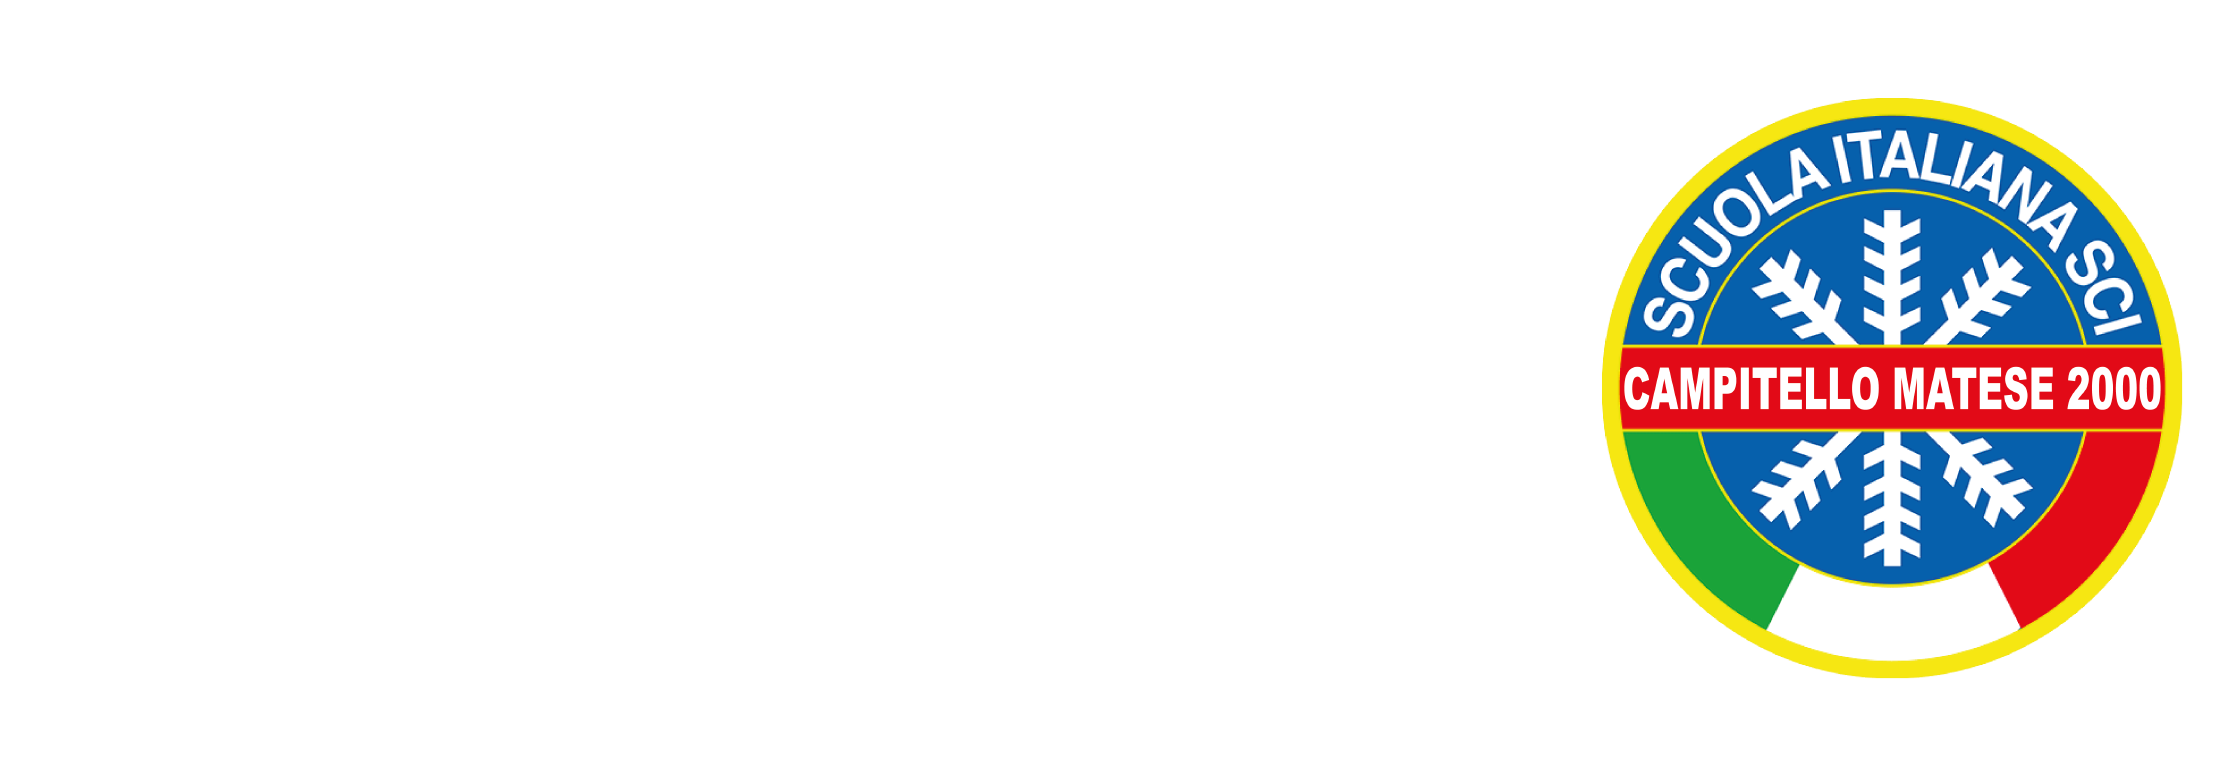 Scuola Italiana Sci Campitello Matese 2000